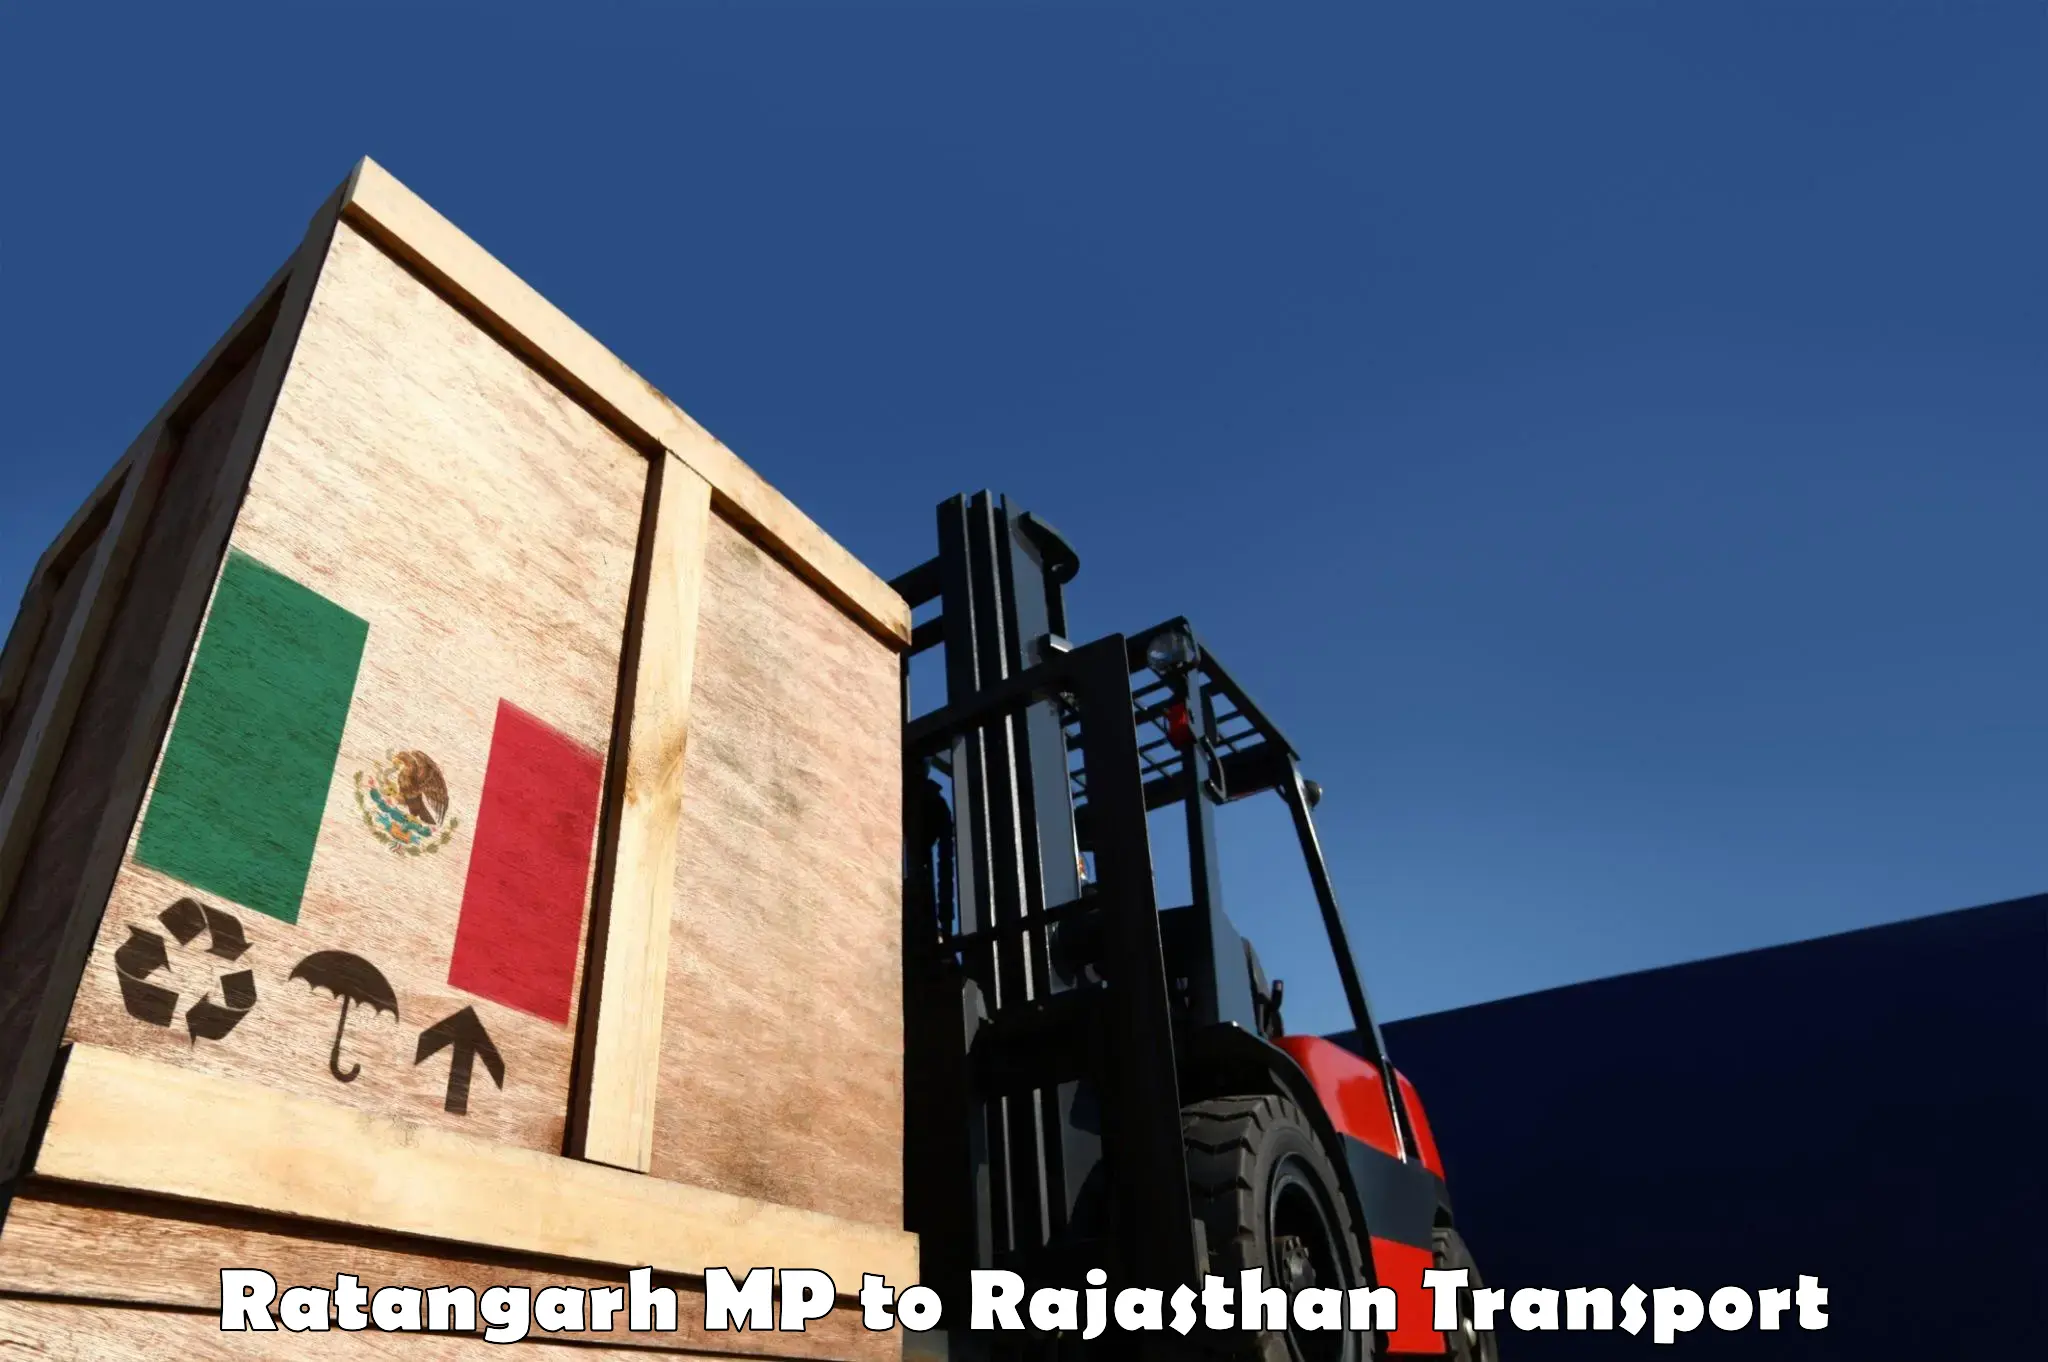 Pick up transport service Ratangarh MP to Pratapgarh Rajasthan